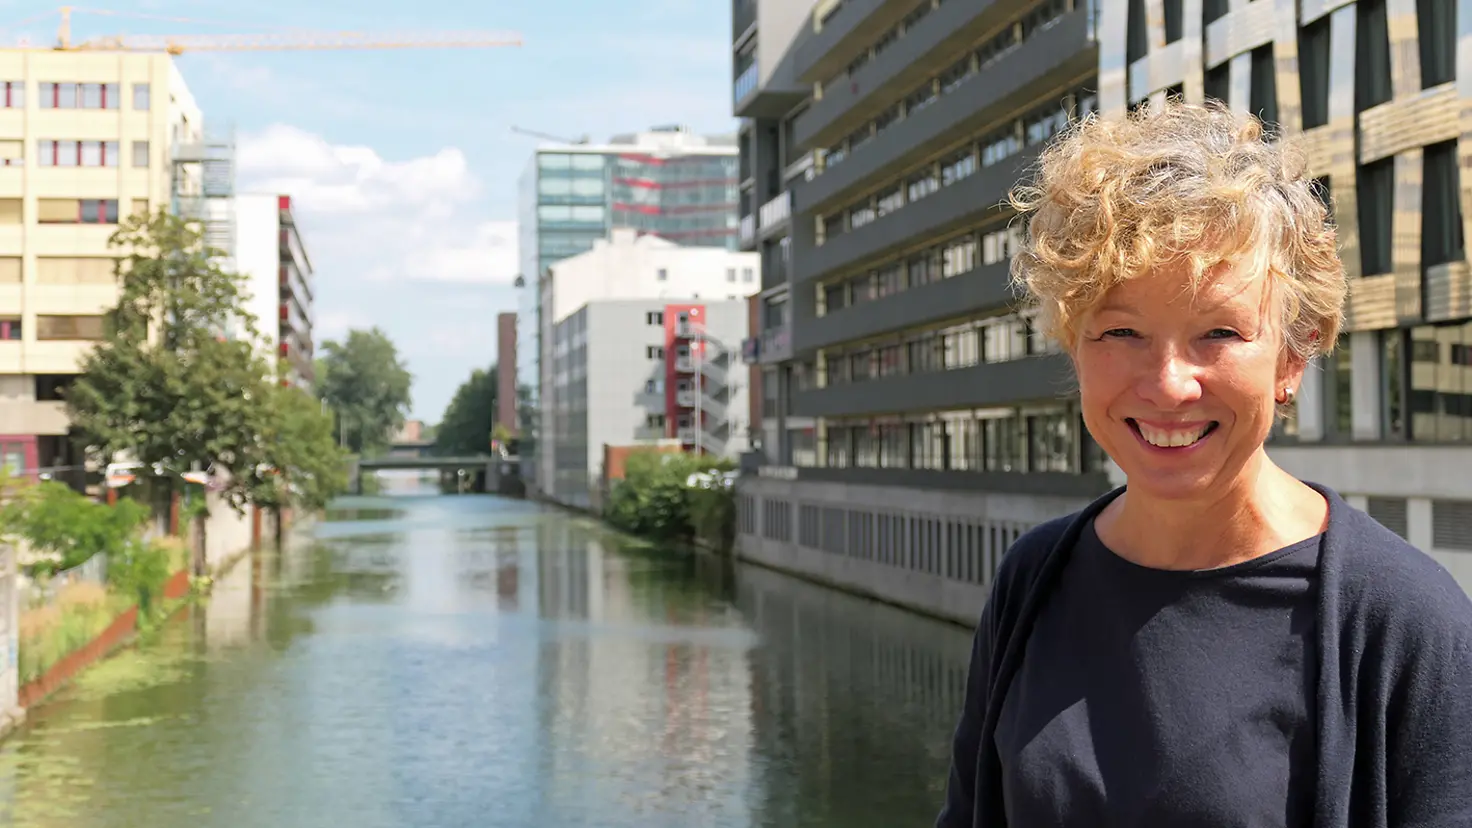 eine lächelnde Frau mit blonden lockigen Haaren steht auf einer Brücke über einen Kanal im Stadtteil Hamburg Hammerbrook